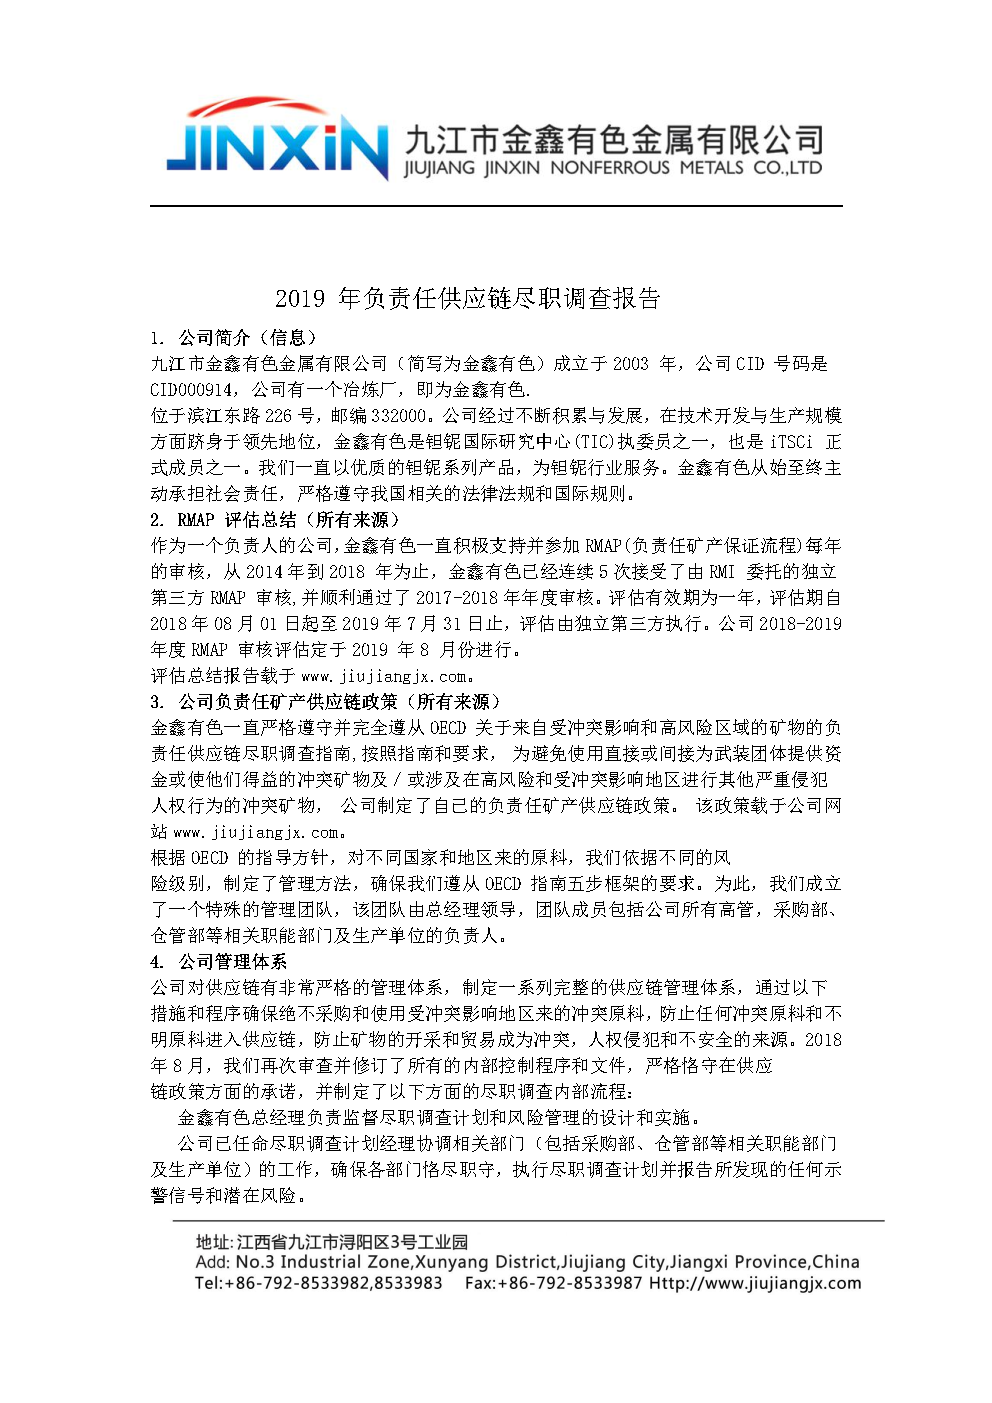 2019 年金鑫负责任供应链尽职调查报告中文